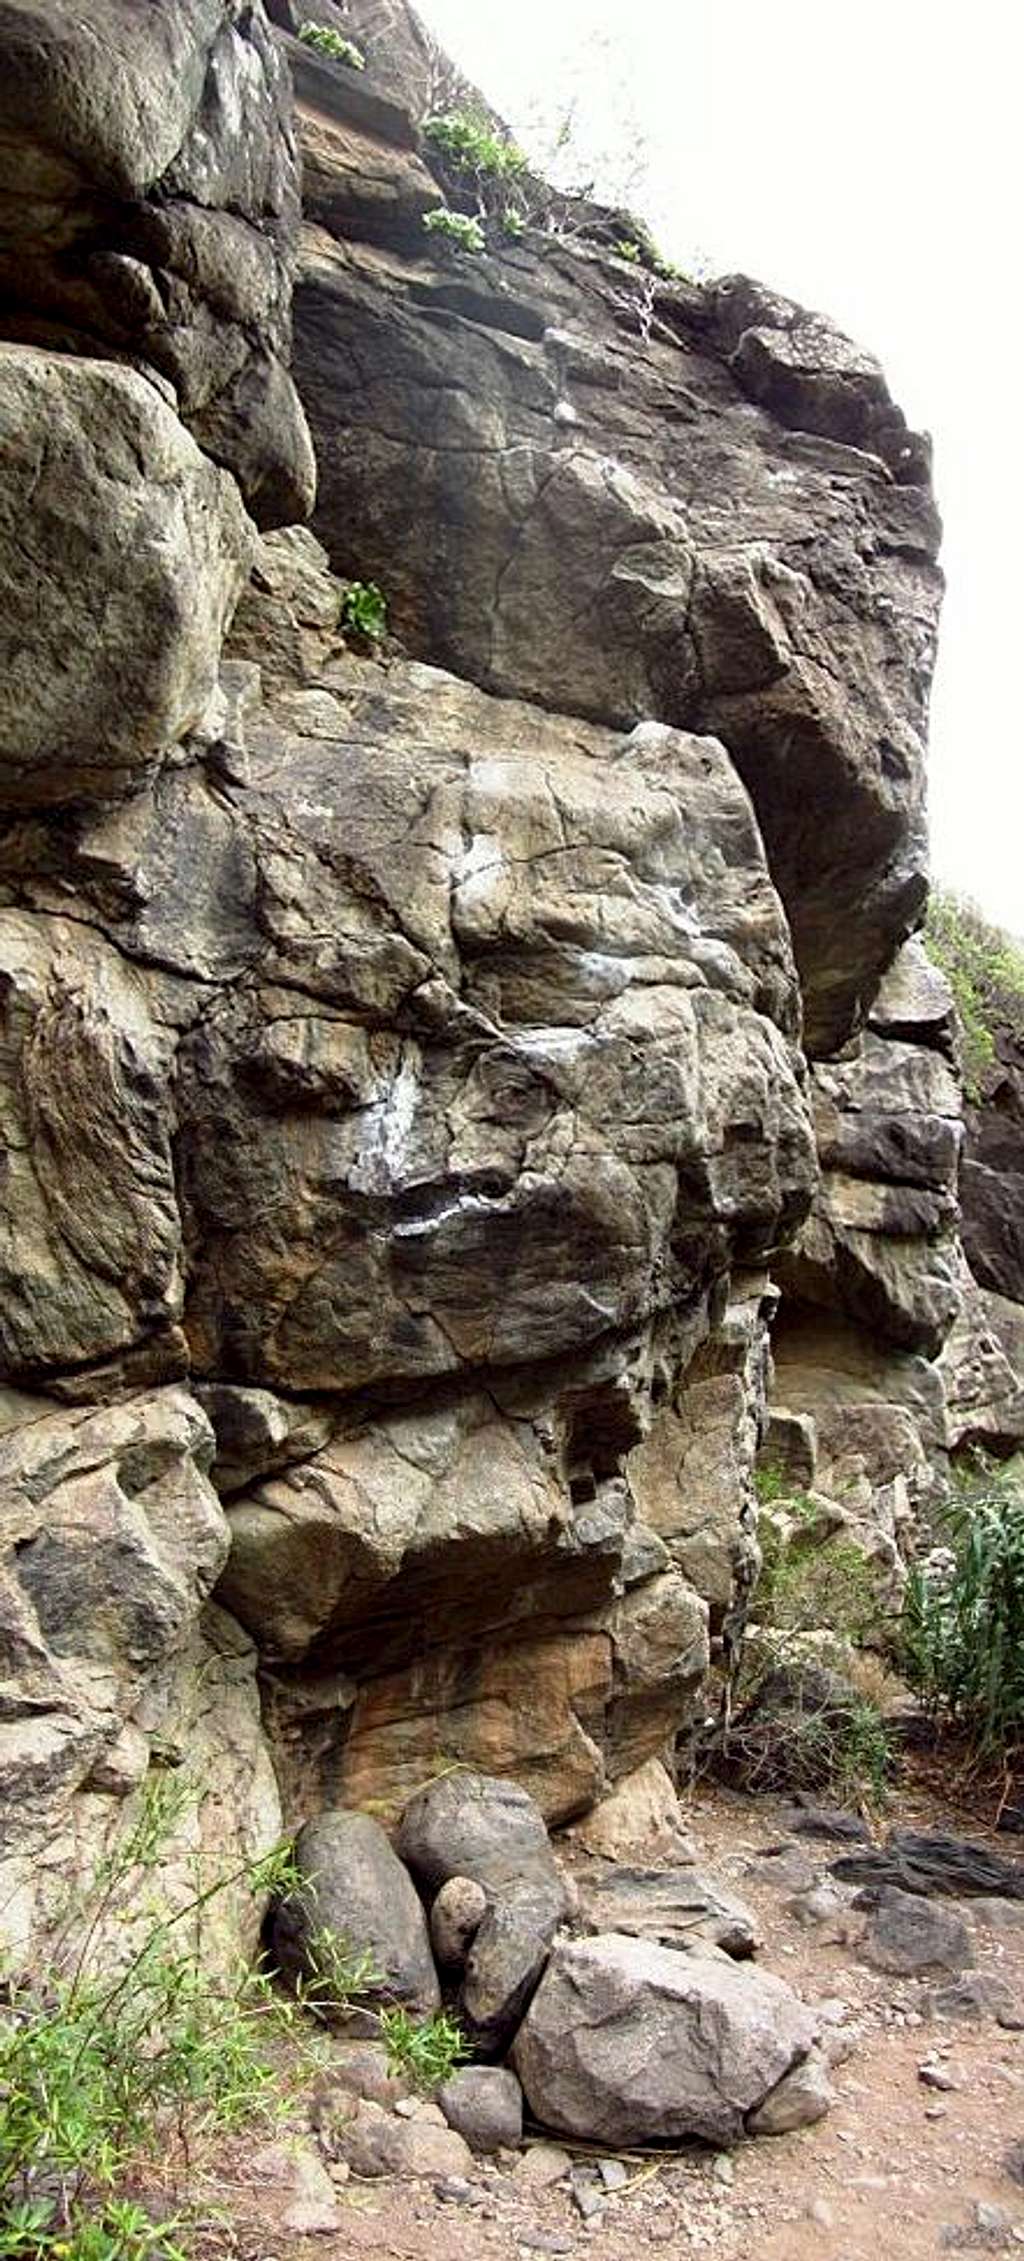 Rock walls at Barranco de Moya